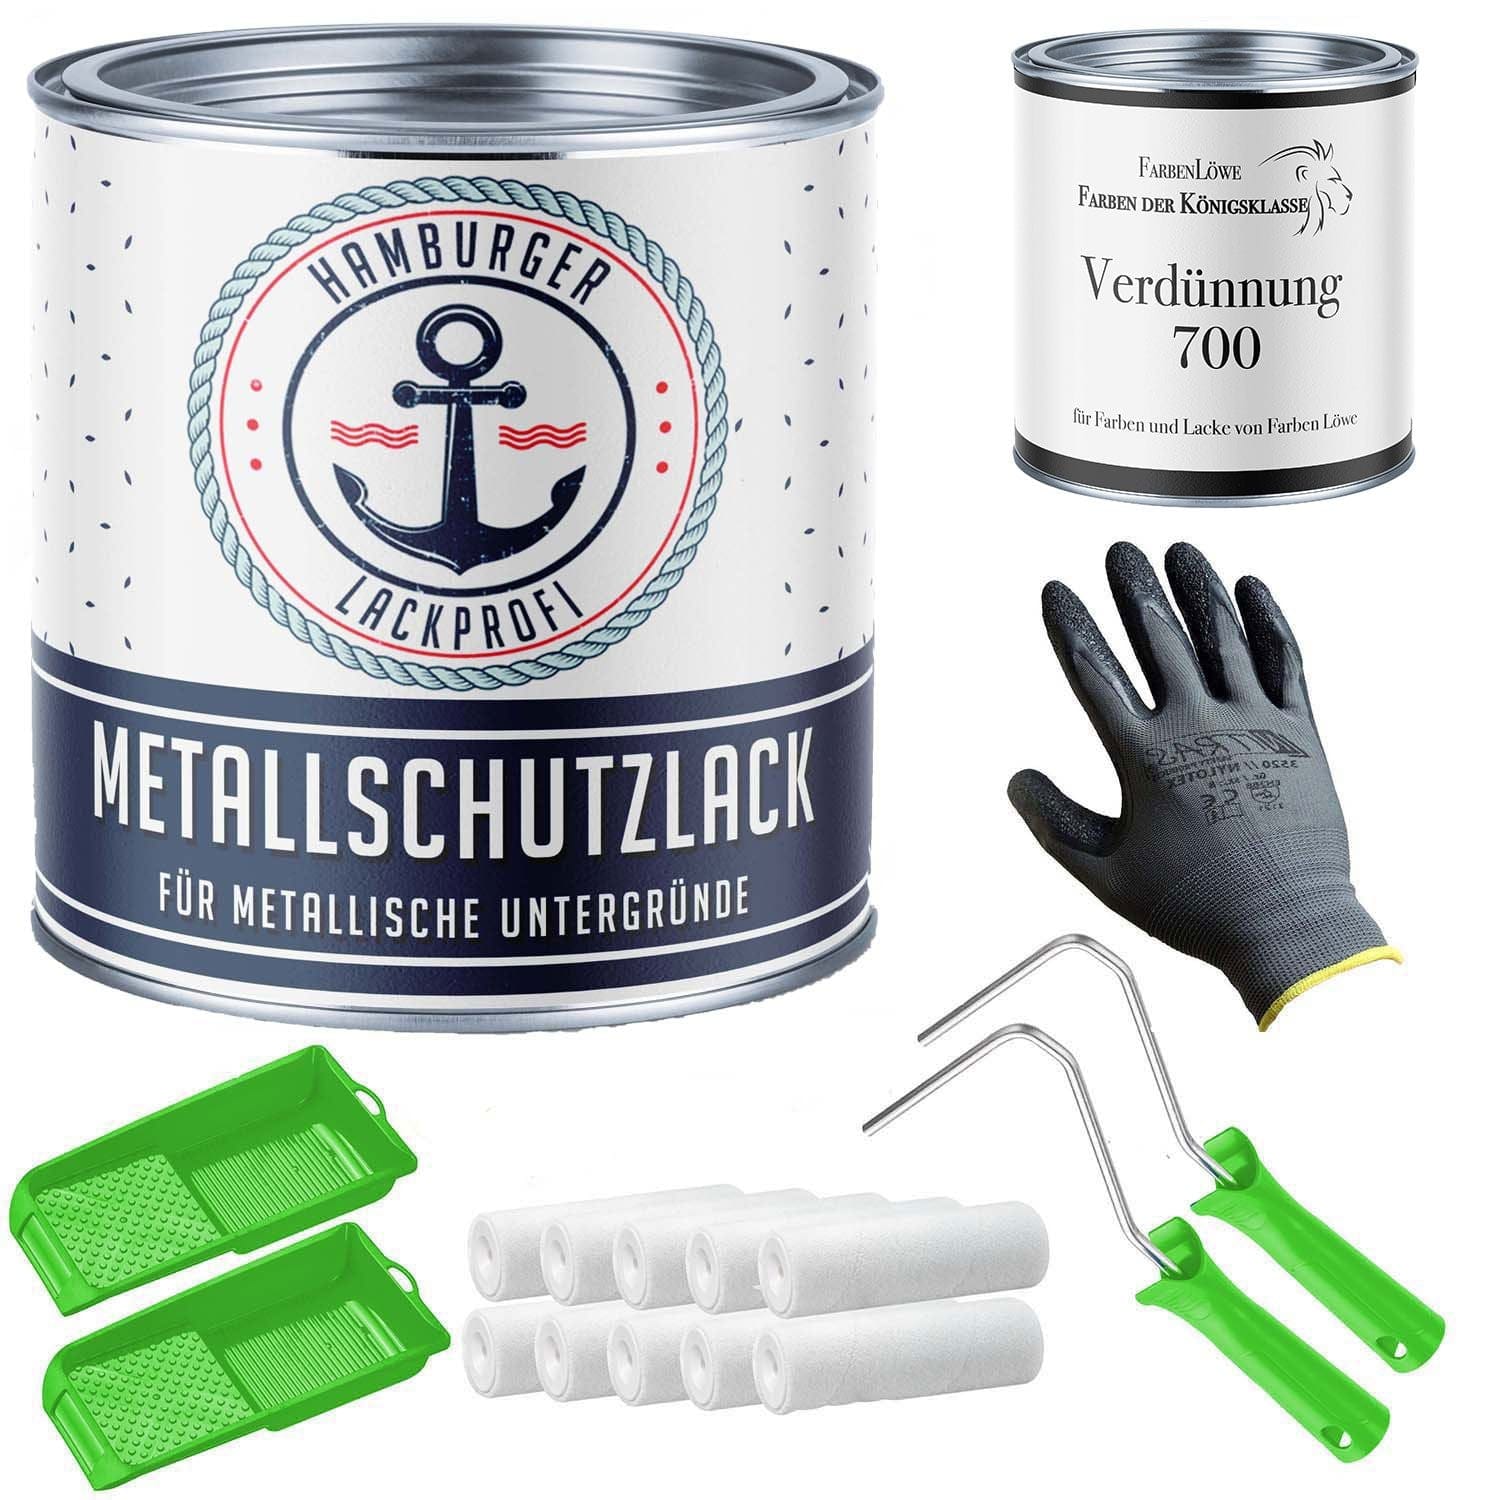 FARBENLÖWE Lacke & Beschichtungen Hamburger Lack-Profi Metallschutzlack in Himmelblau RAL 5015 mit Lackierset (X300) & Verdünnung (1 L) - 30% Sparangebot